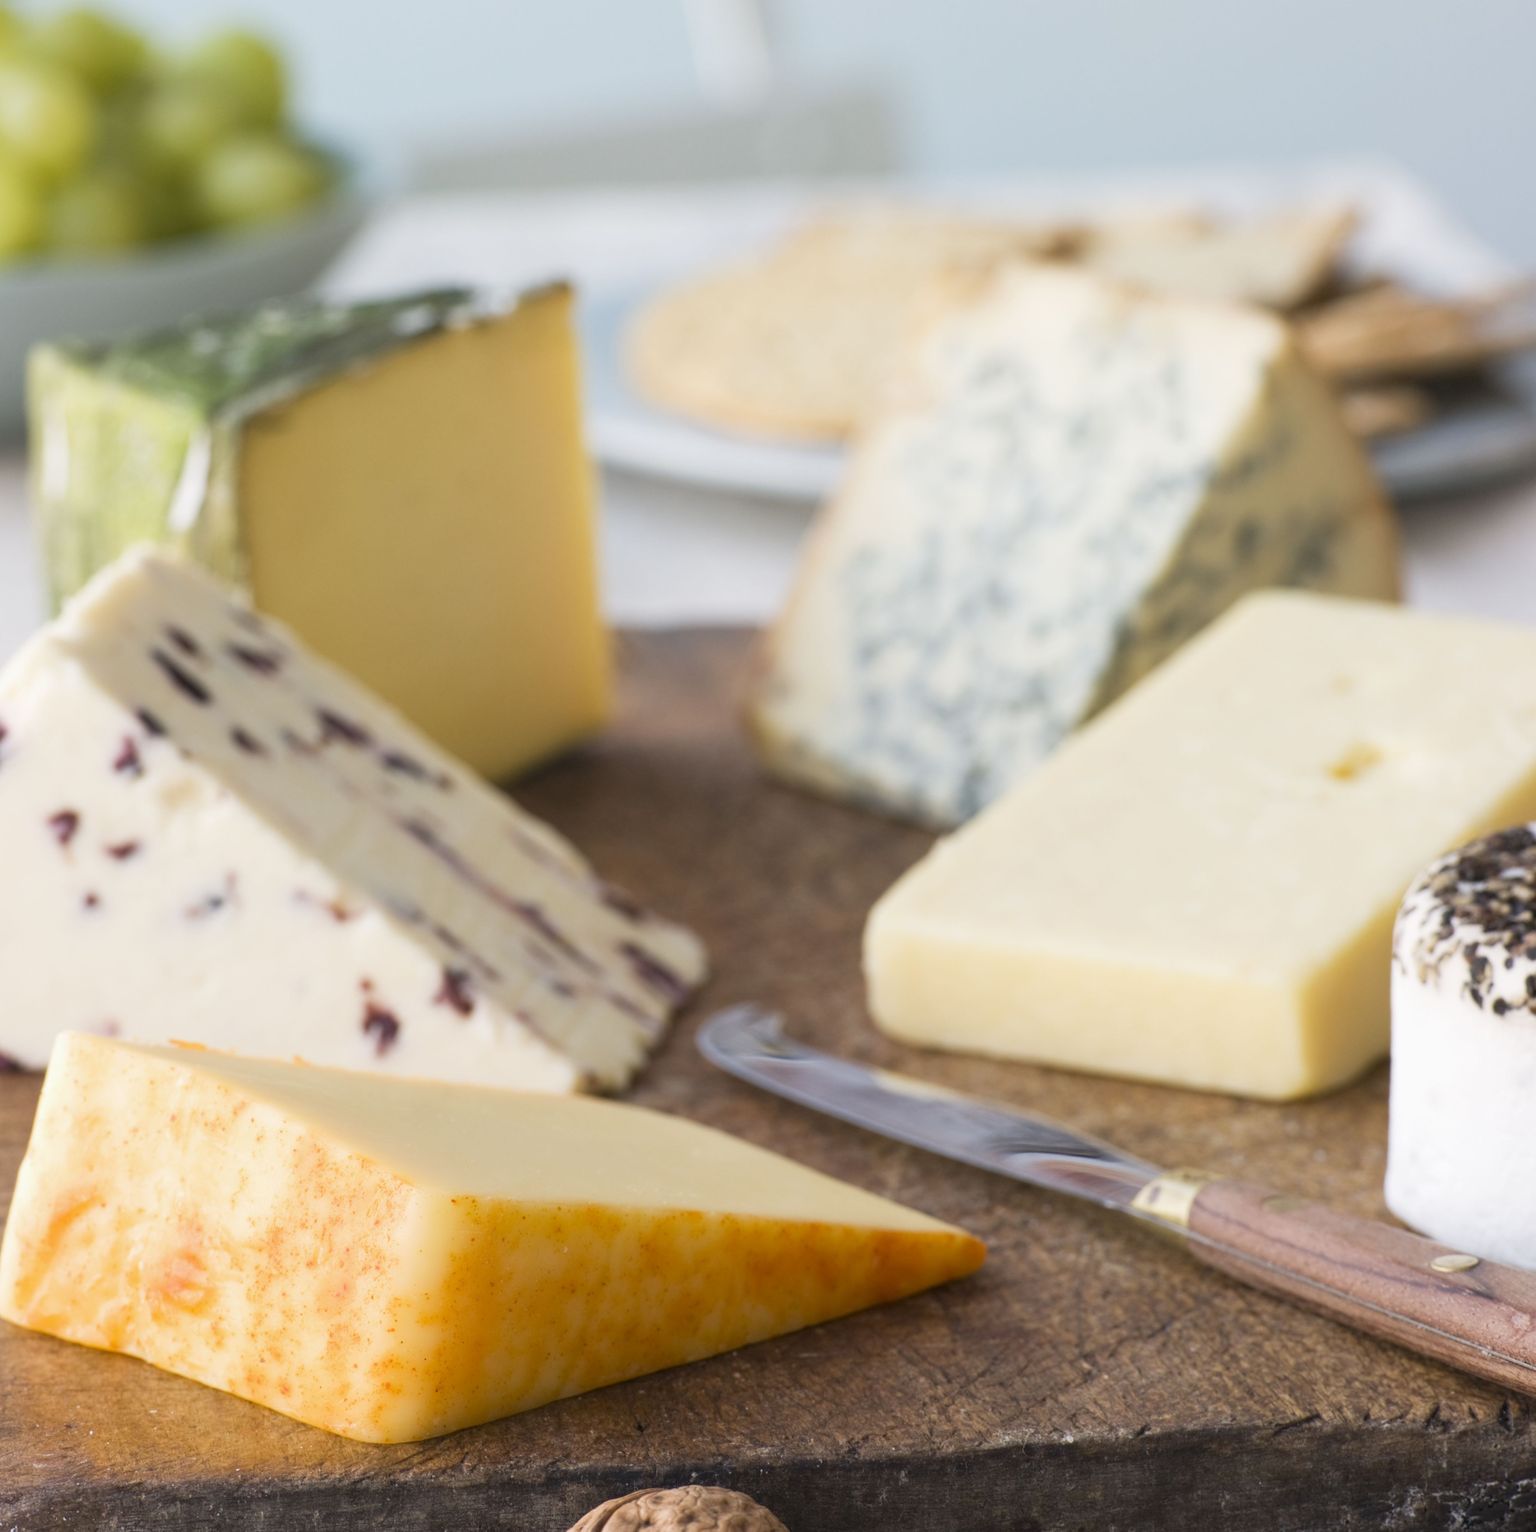 Maailma kõige kallim juust ja teisi fakte juustu kohta